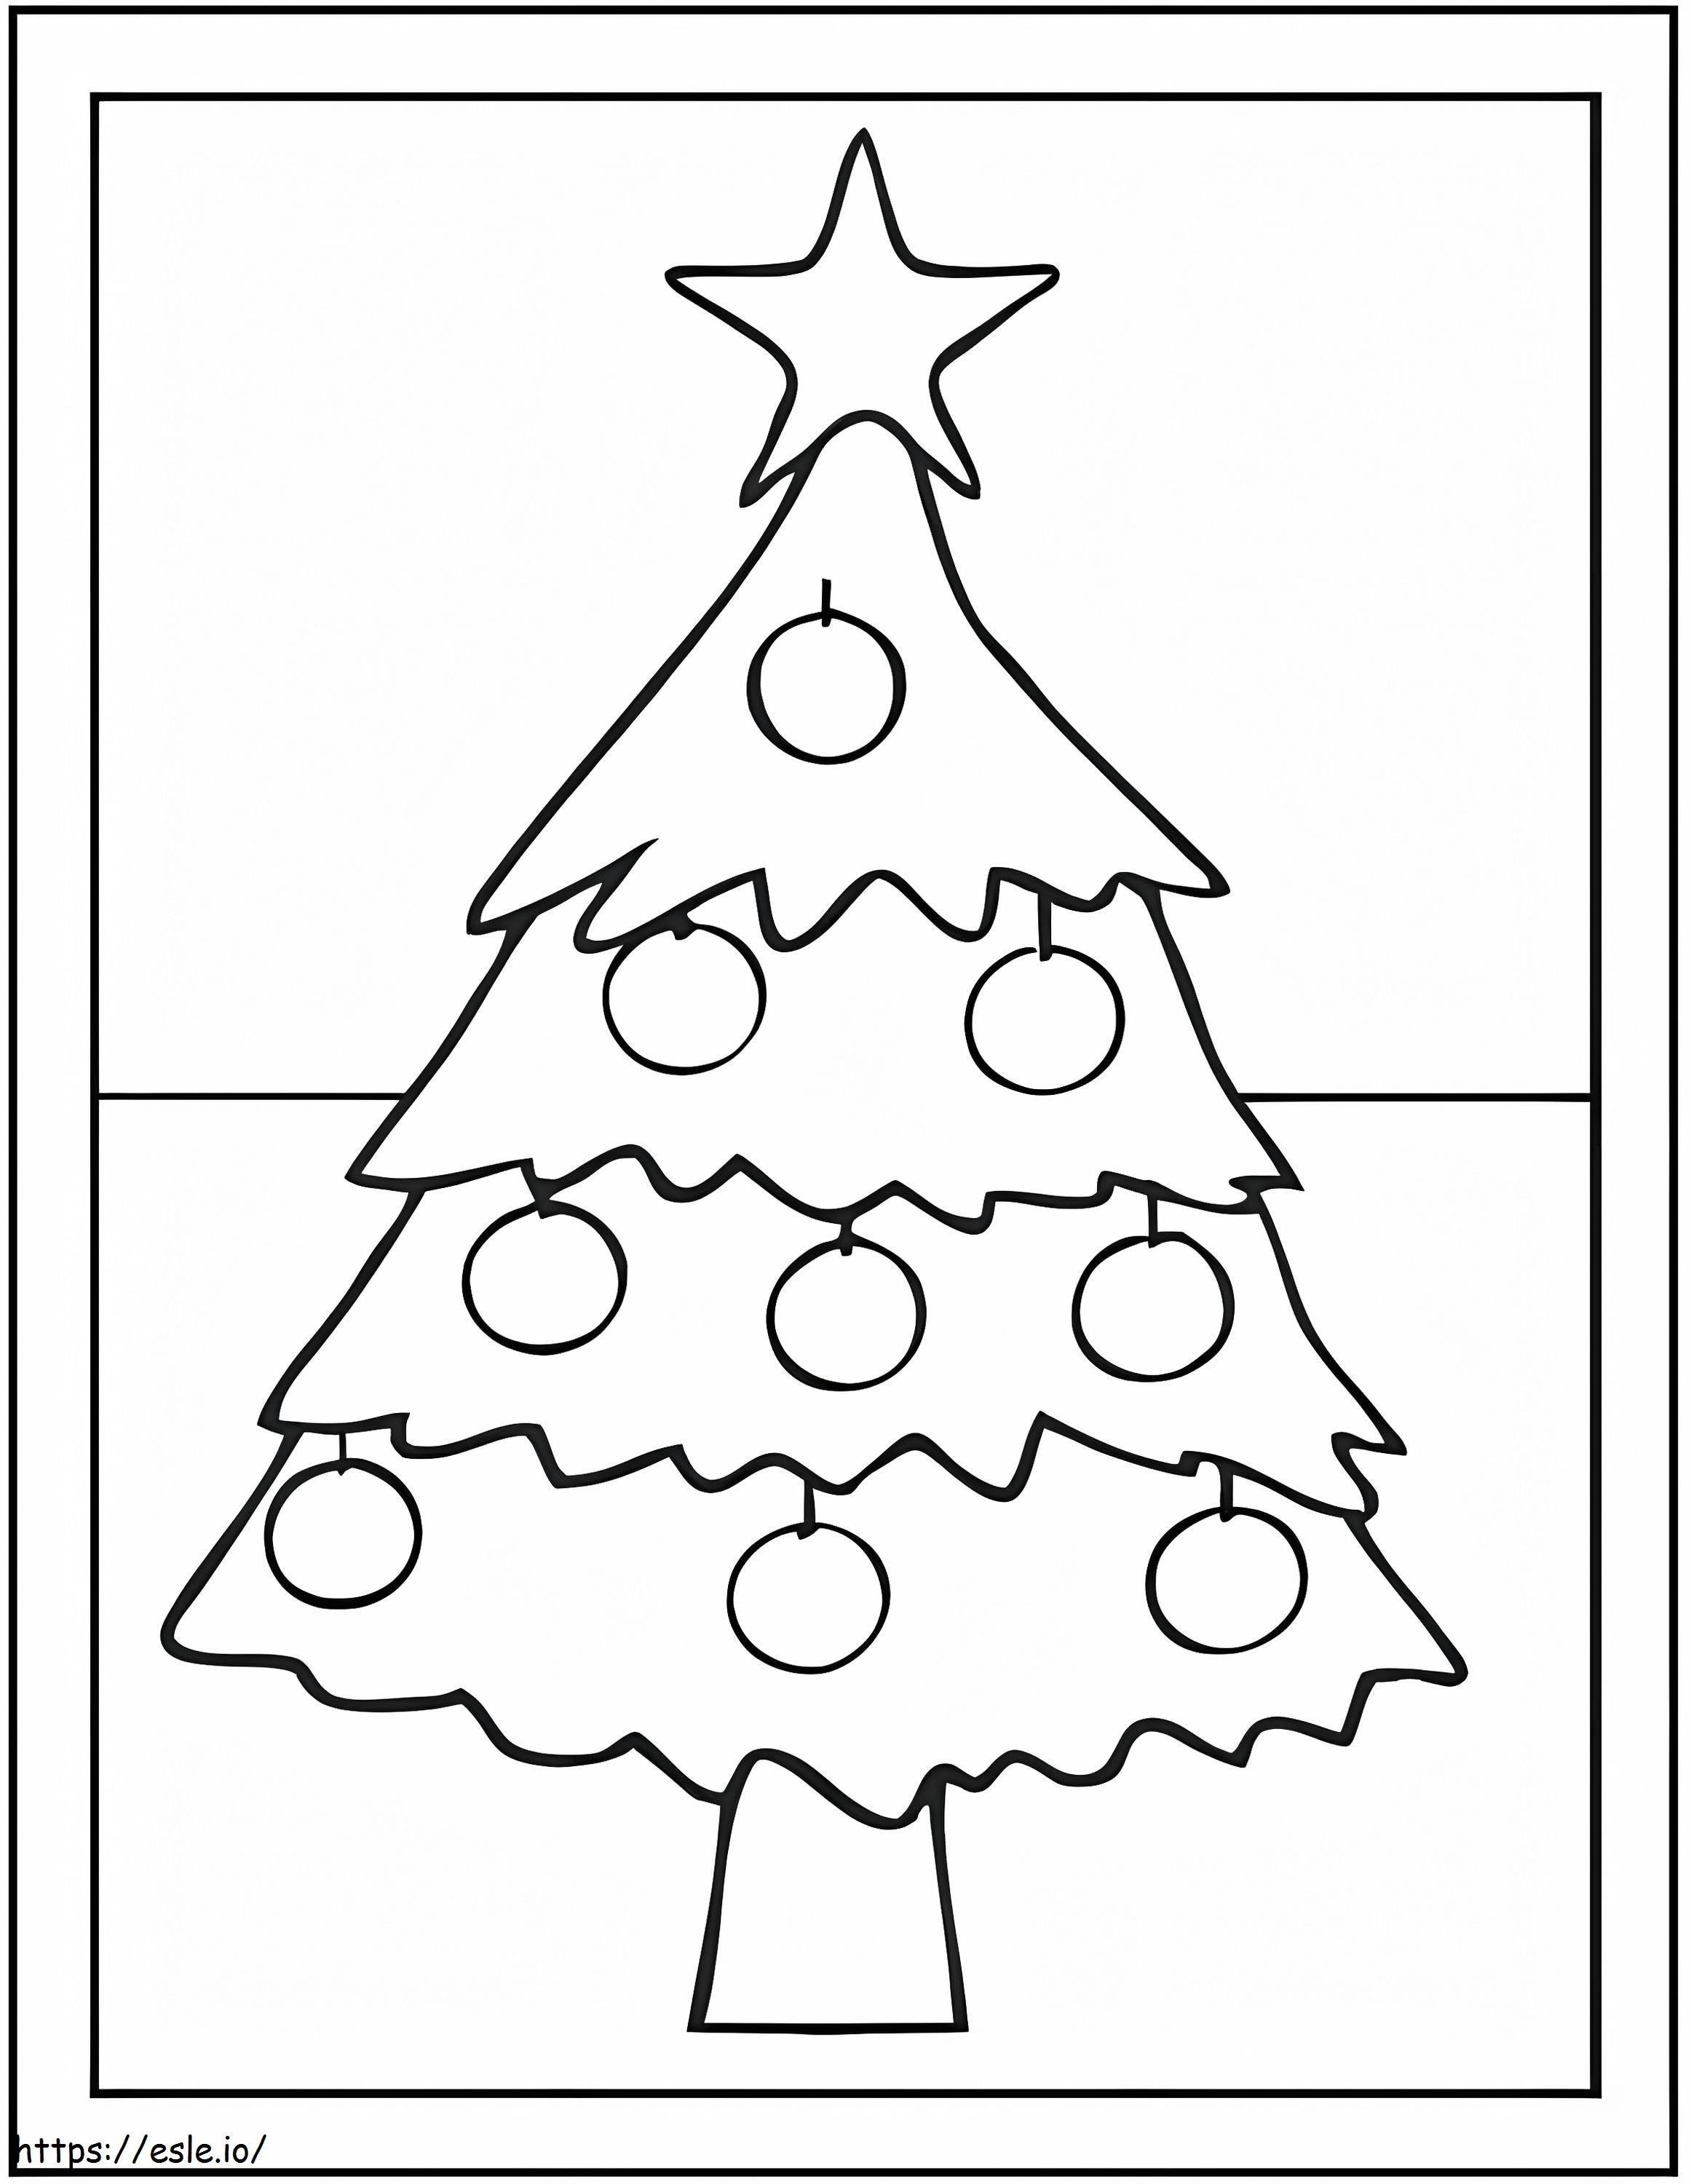 Der Stern auf dem Weihnachtsbaum ausmalbilder